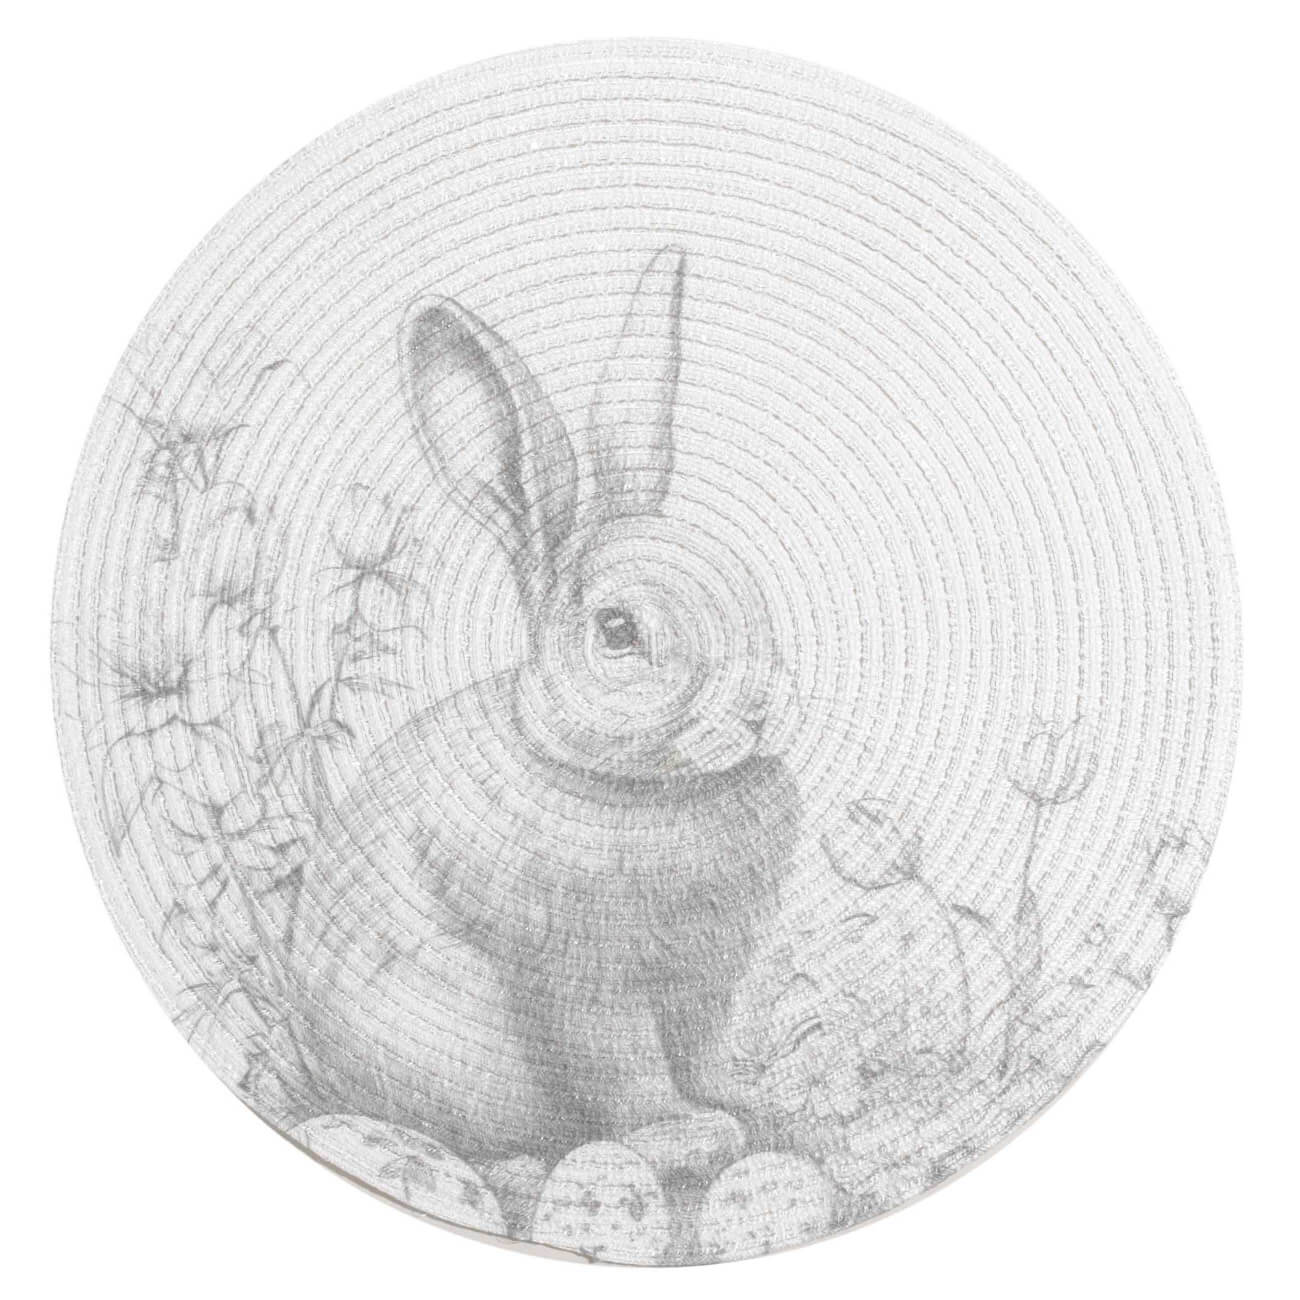 Салфетка под приборы, 38 см, полиэстер, круглая, белая, Графичный кролик, Rotary print салфетка azur